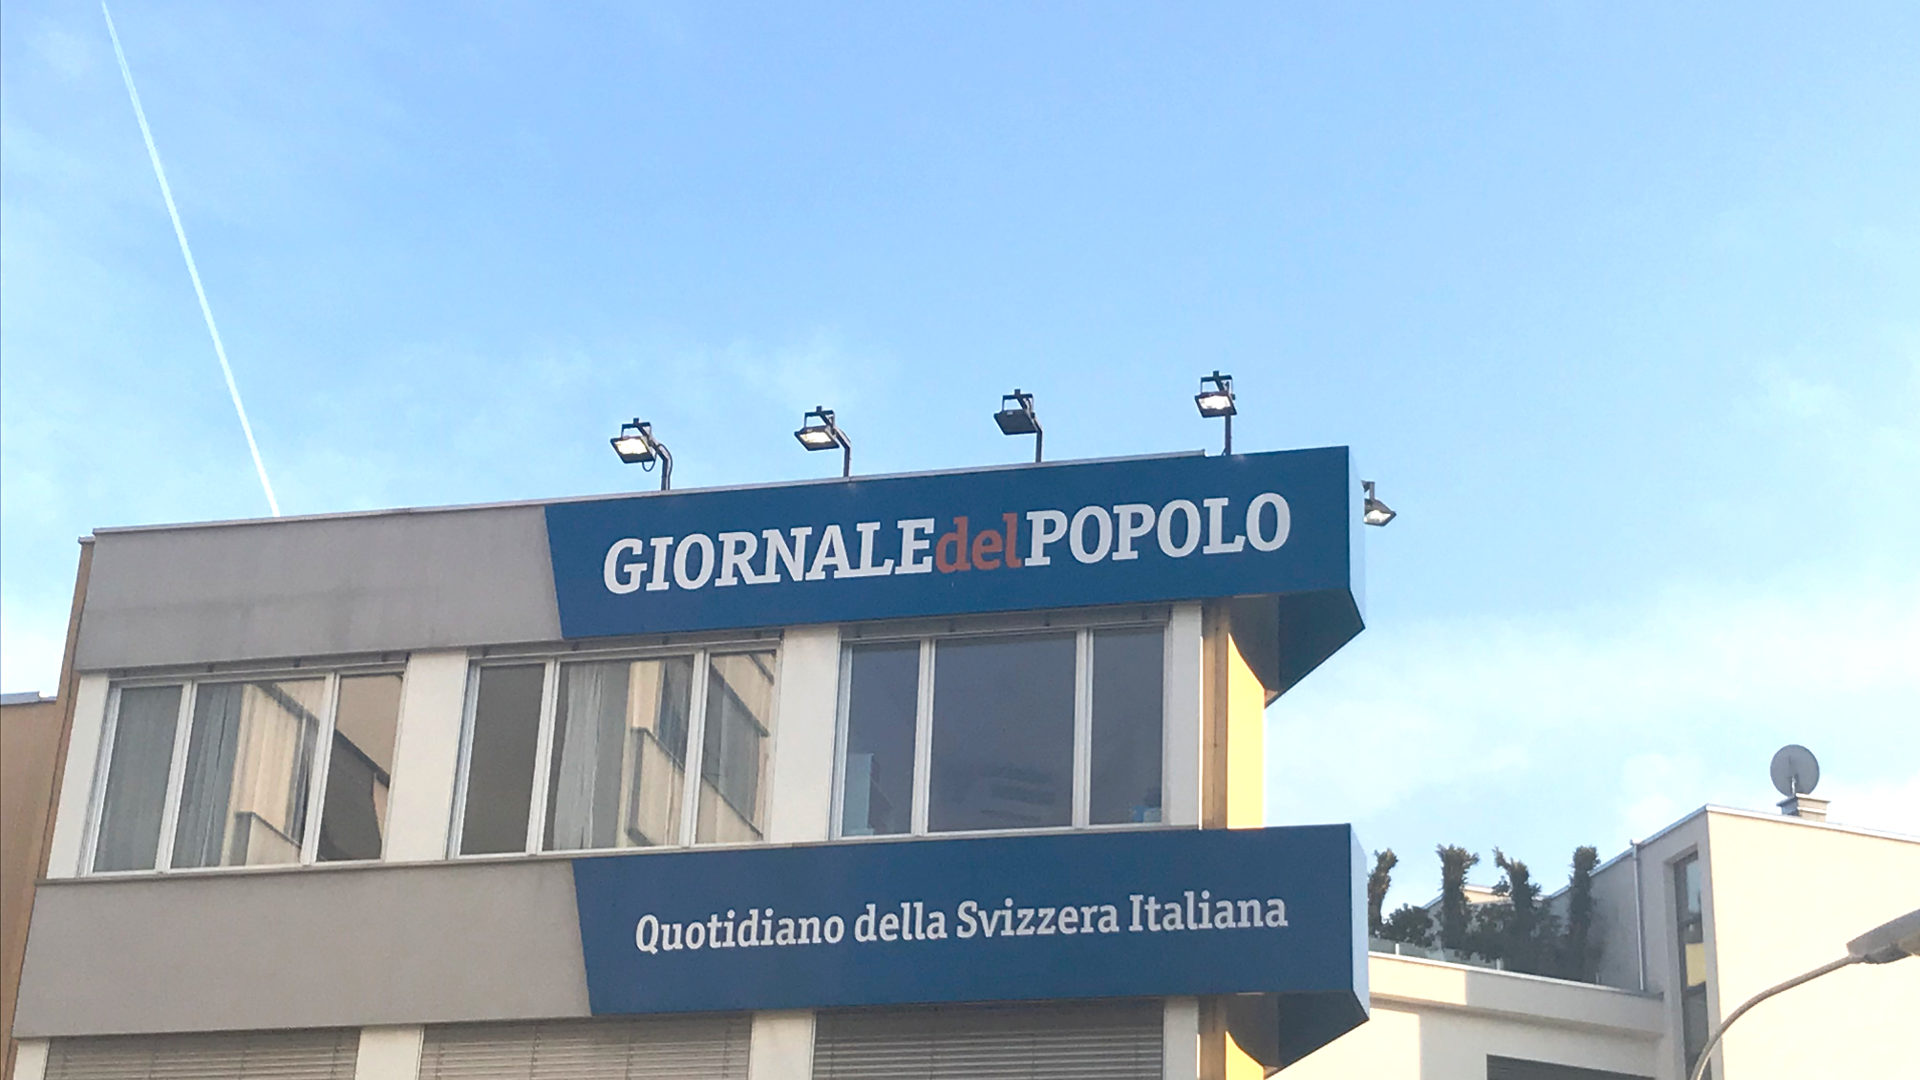 Gebäude des "Giornale del Popolo", der Zeitung des Bischofs von Lugano